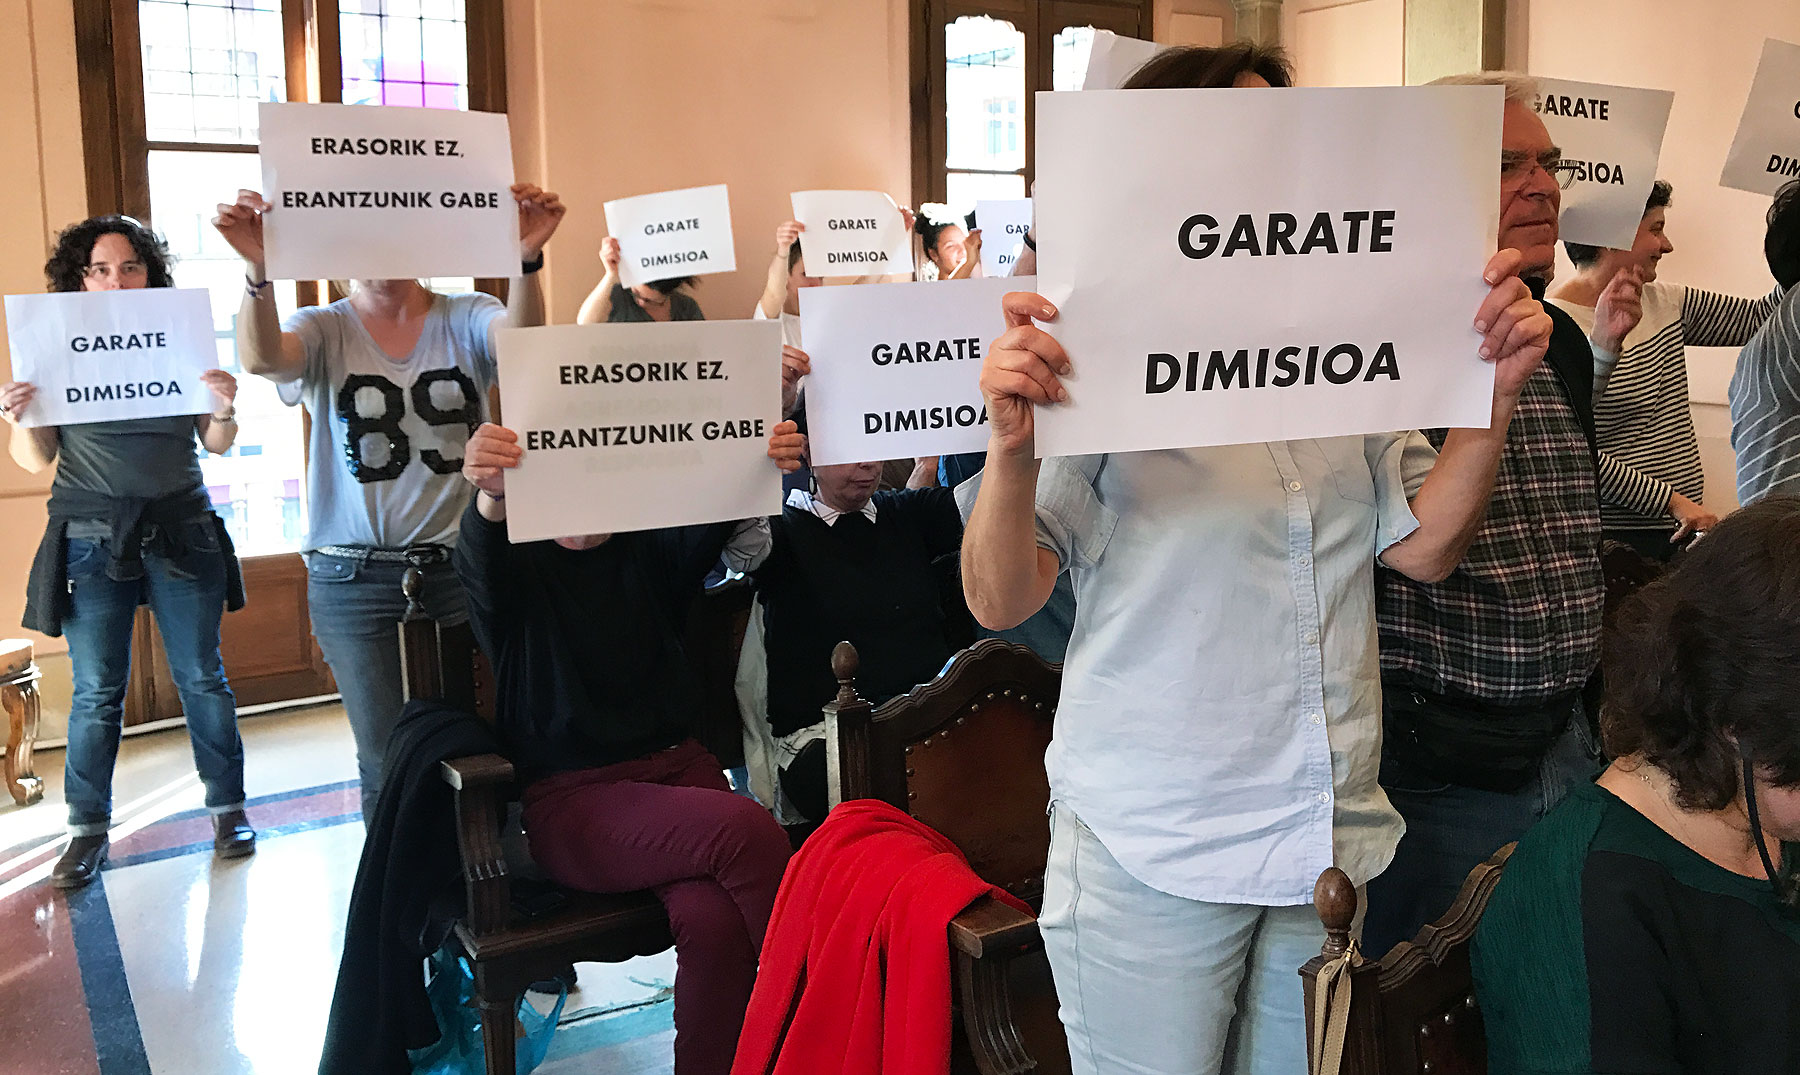 La Plataforma Feminista inicia una campaña de recogida de firmas para pedir la dimisión de Garate